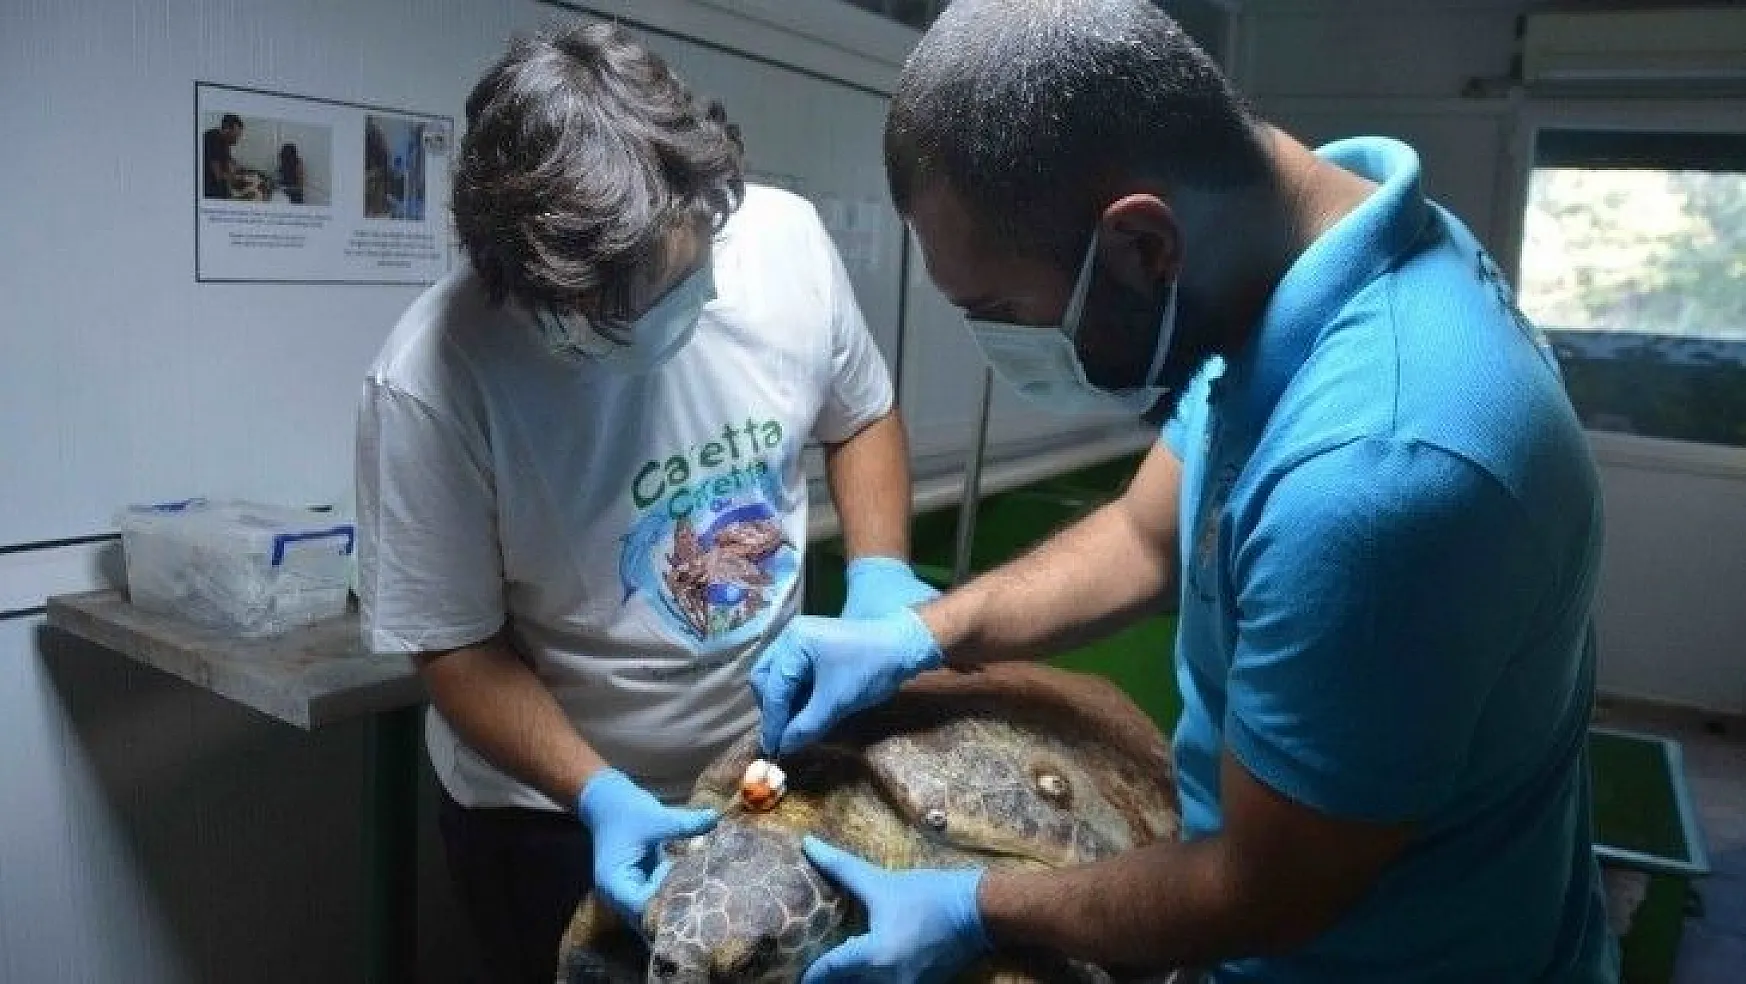 Zıpkınla vurulan deniz kaplumbağası tedavi altına alındı